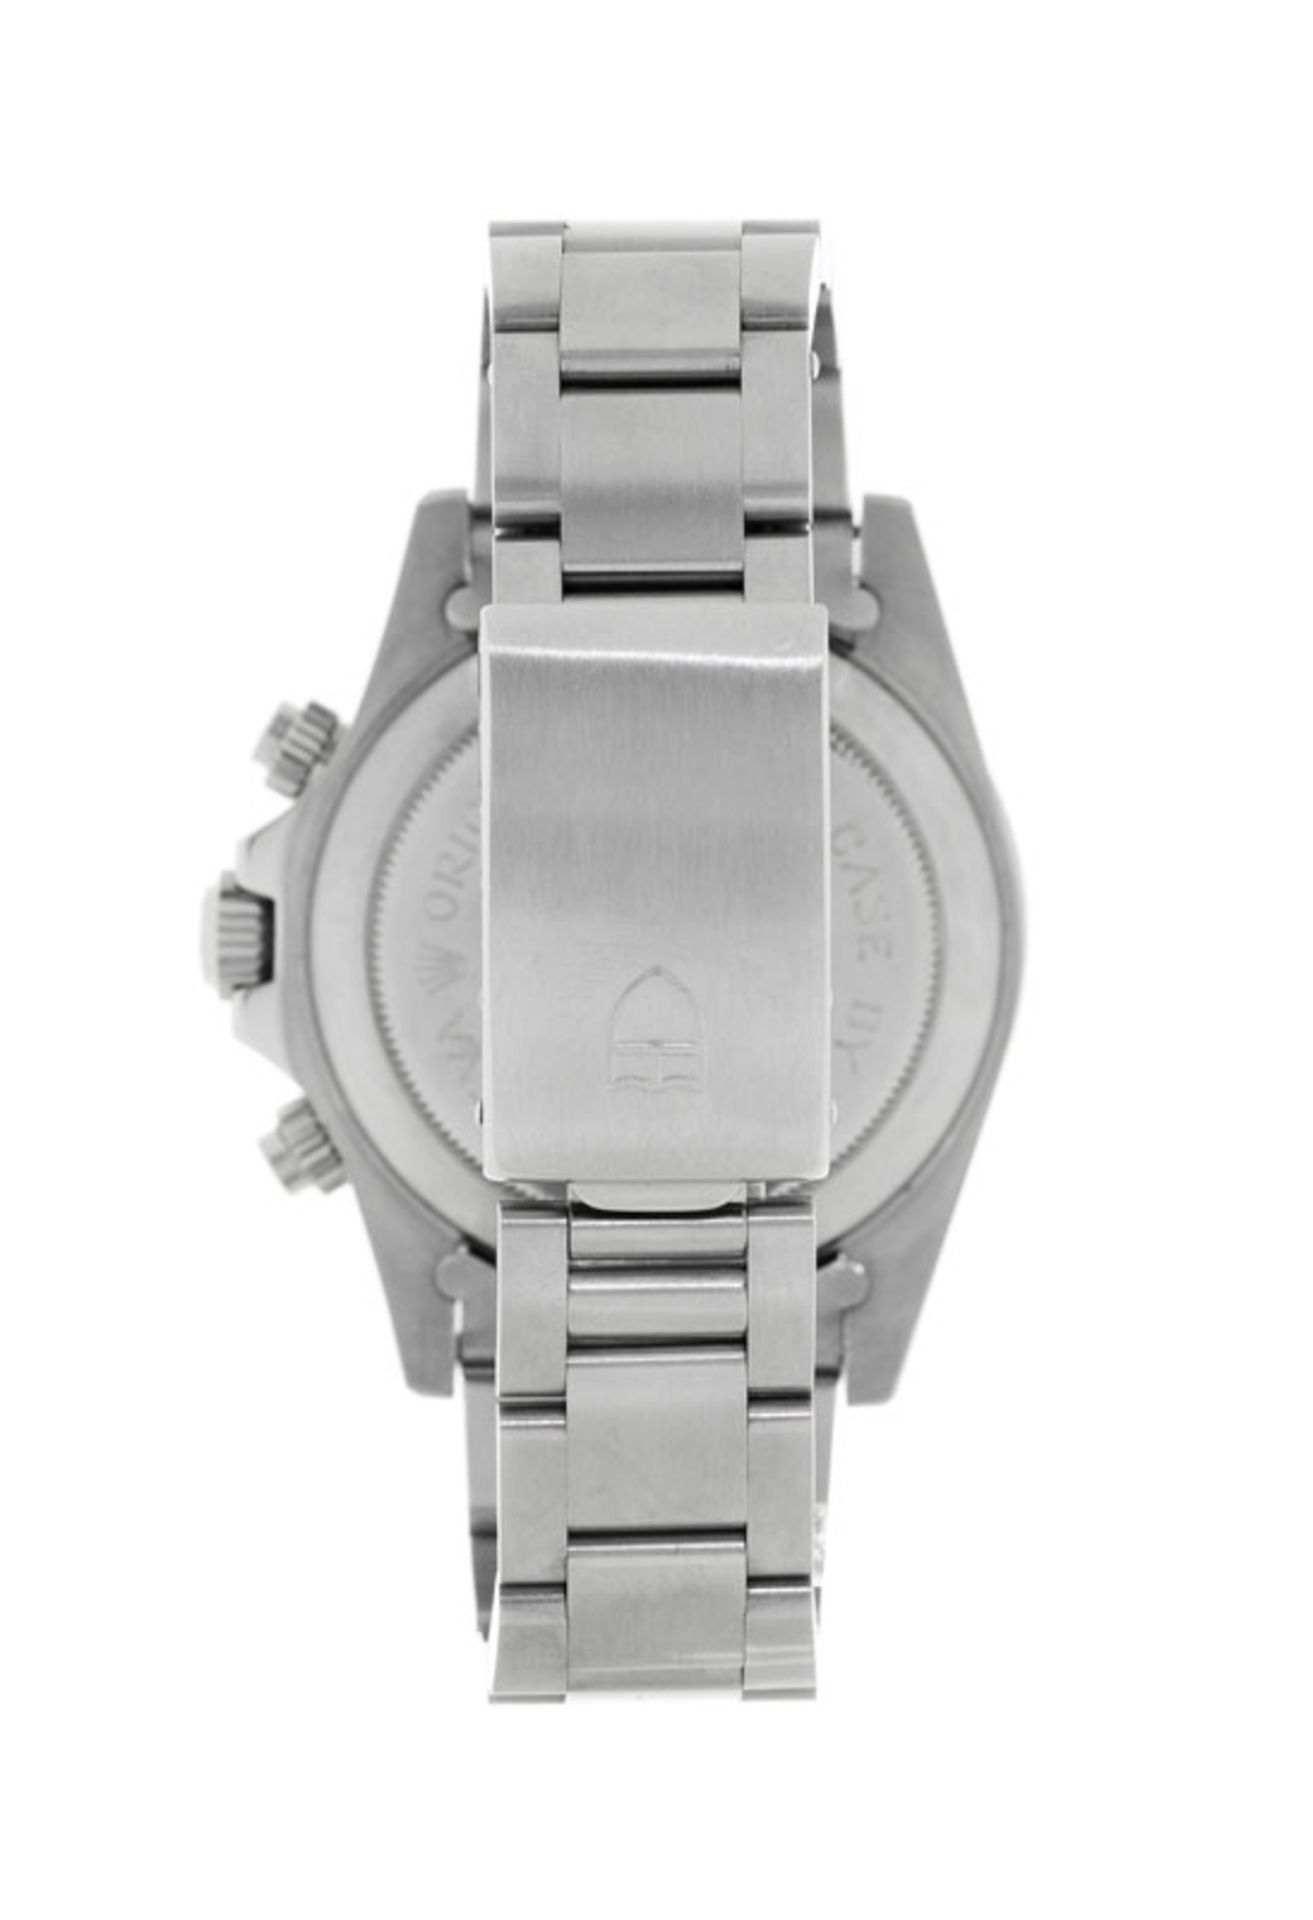 Tudor, Monte Carlo, réf. 7159/0, montre-bracelet chronographe en acier, années 1970, écrinTu - Image 3 of 5